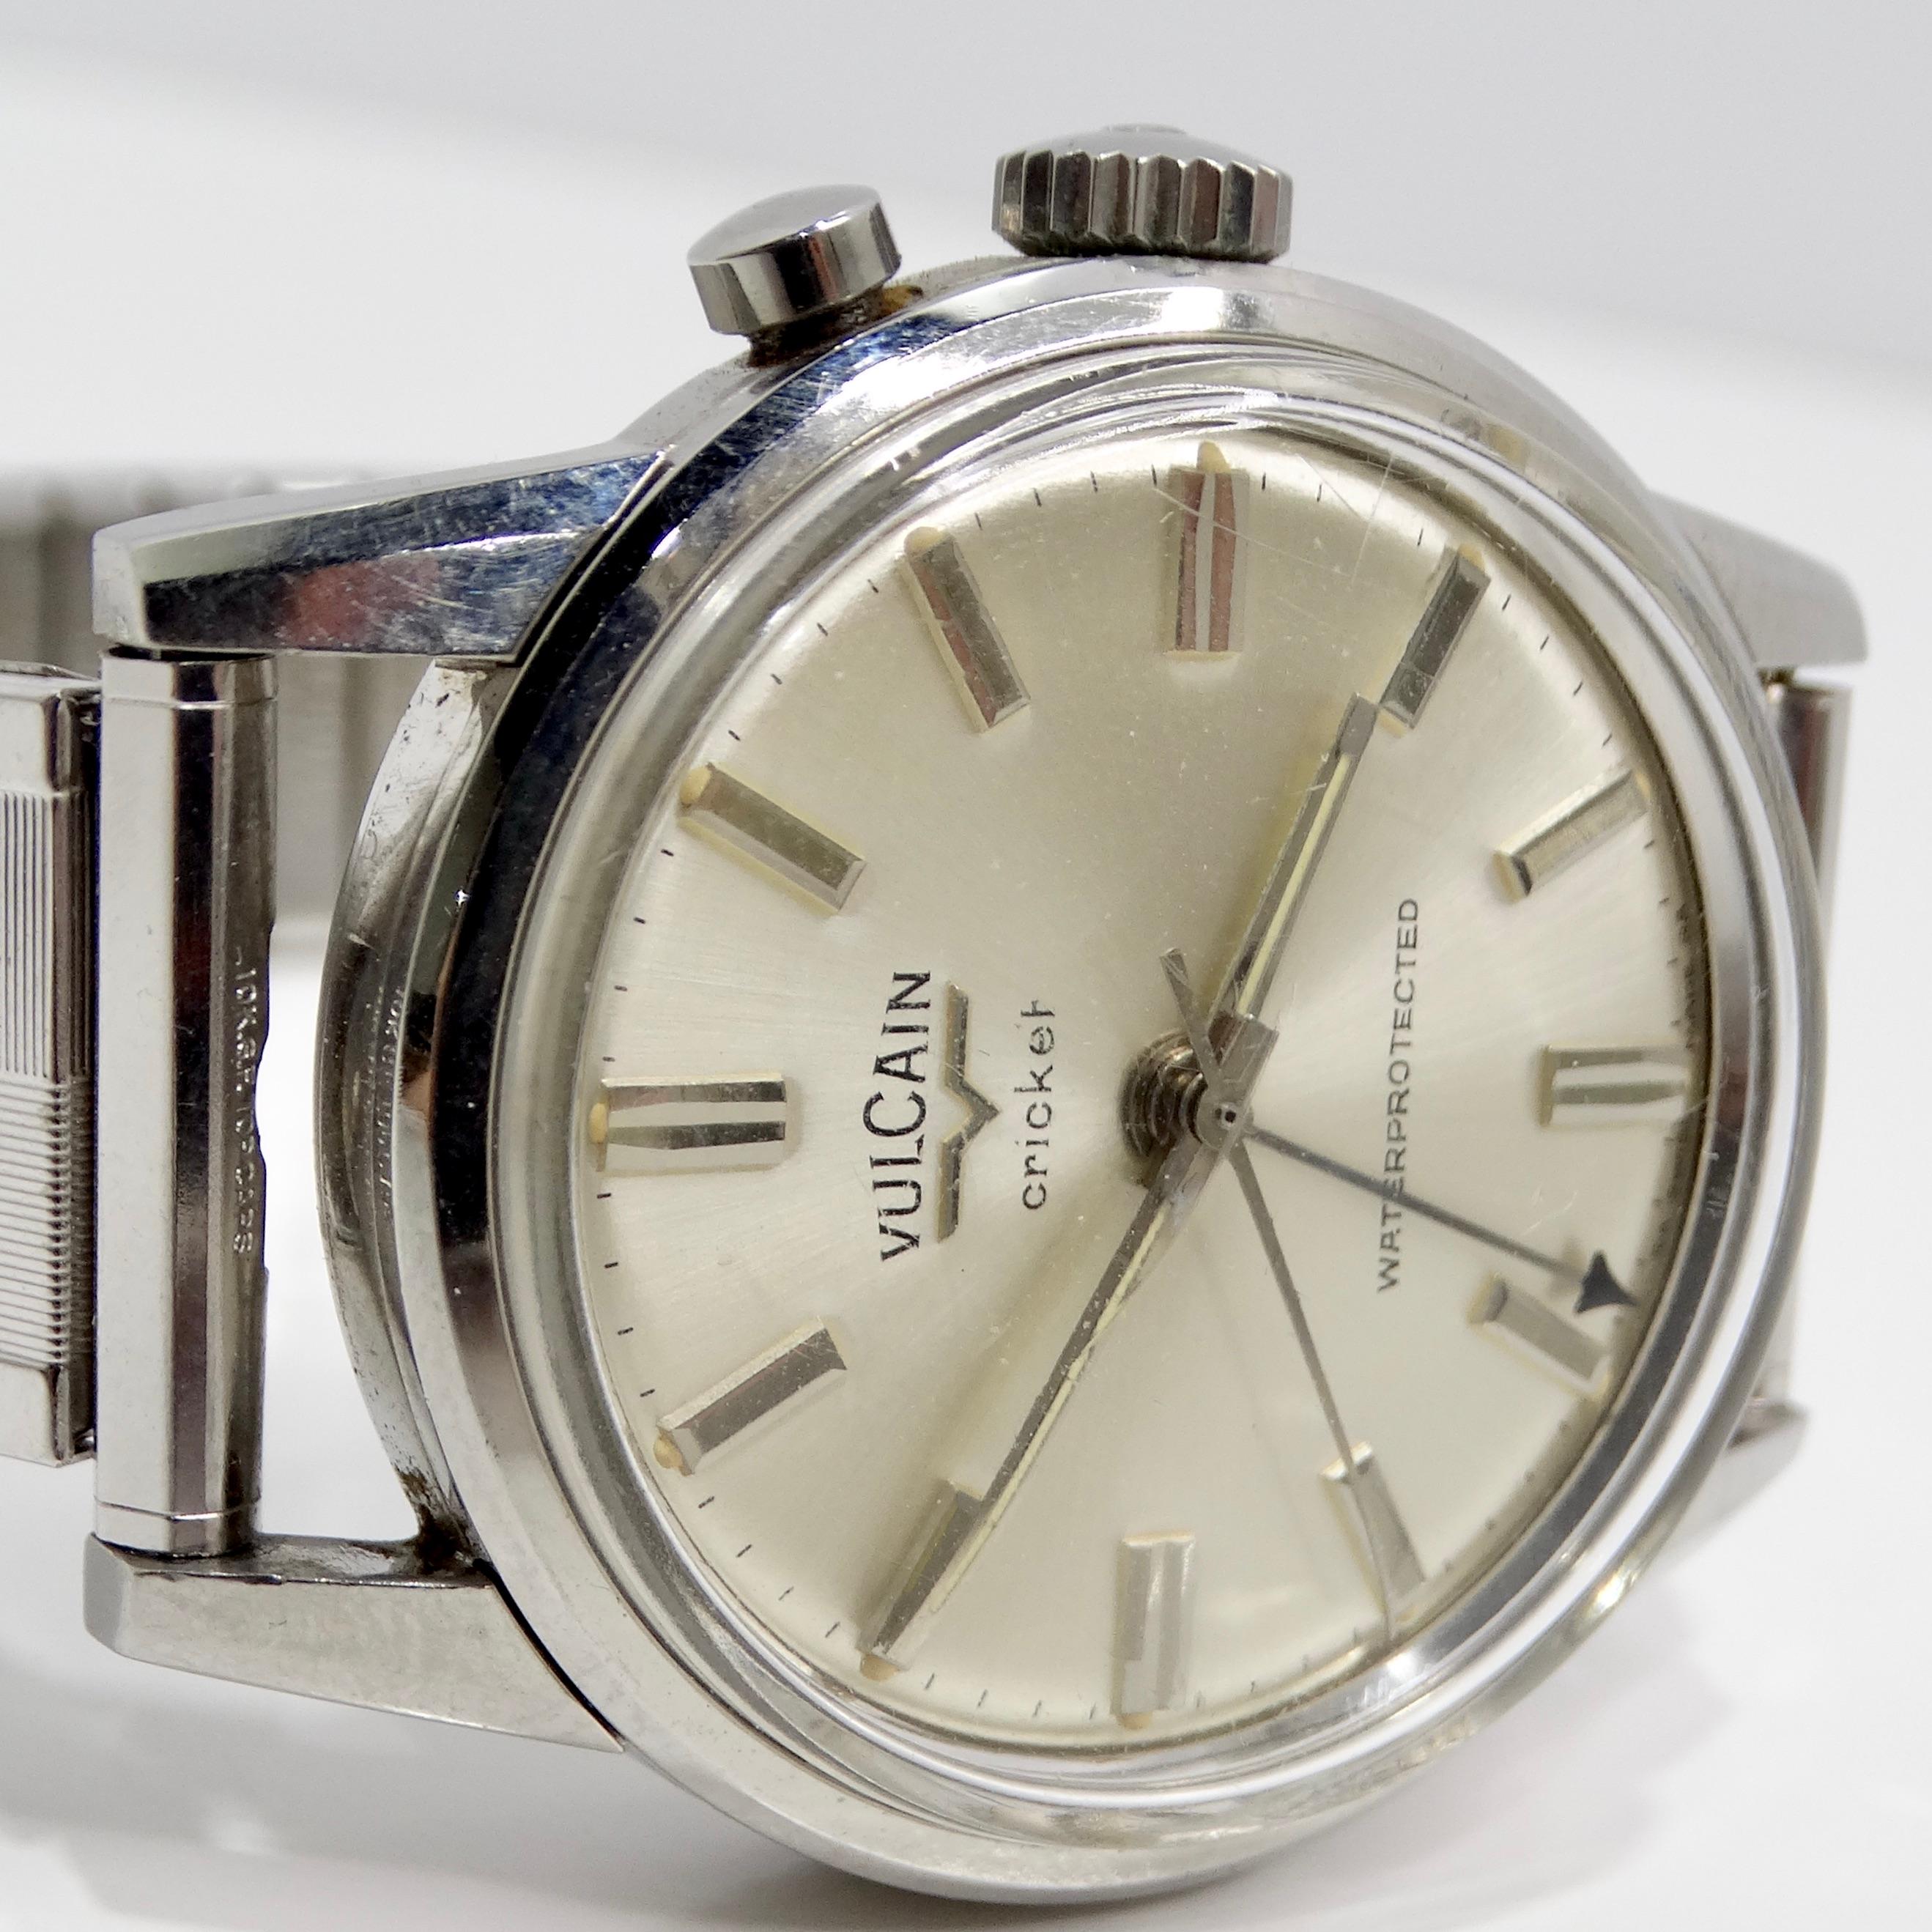 Voici la montre en acier inoxydable Vulcain des années 1960, une montre-bracelet rare et classique qui capture l'essence de l'élégance vintage. Cette montre exquise est dotée d'un boîtier en acier inoxydable de couleur argentée, offrant un design